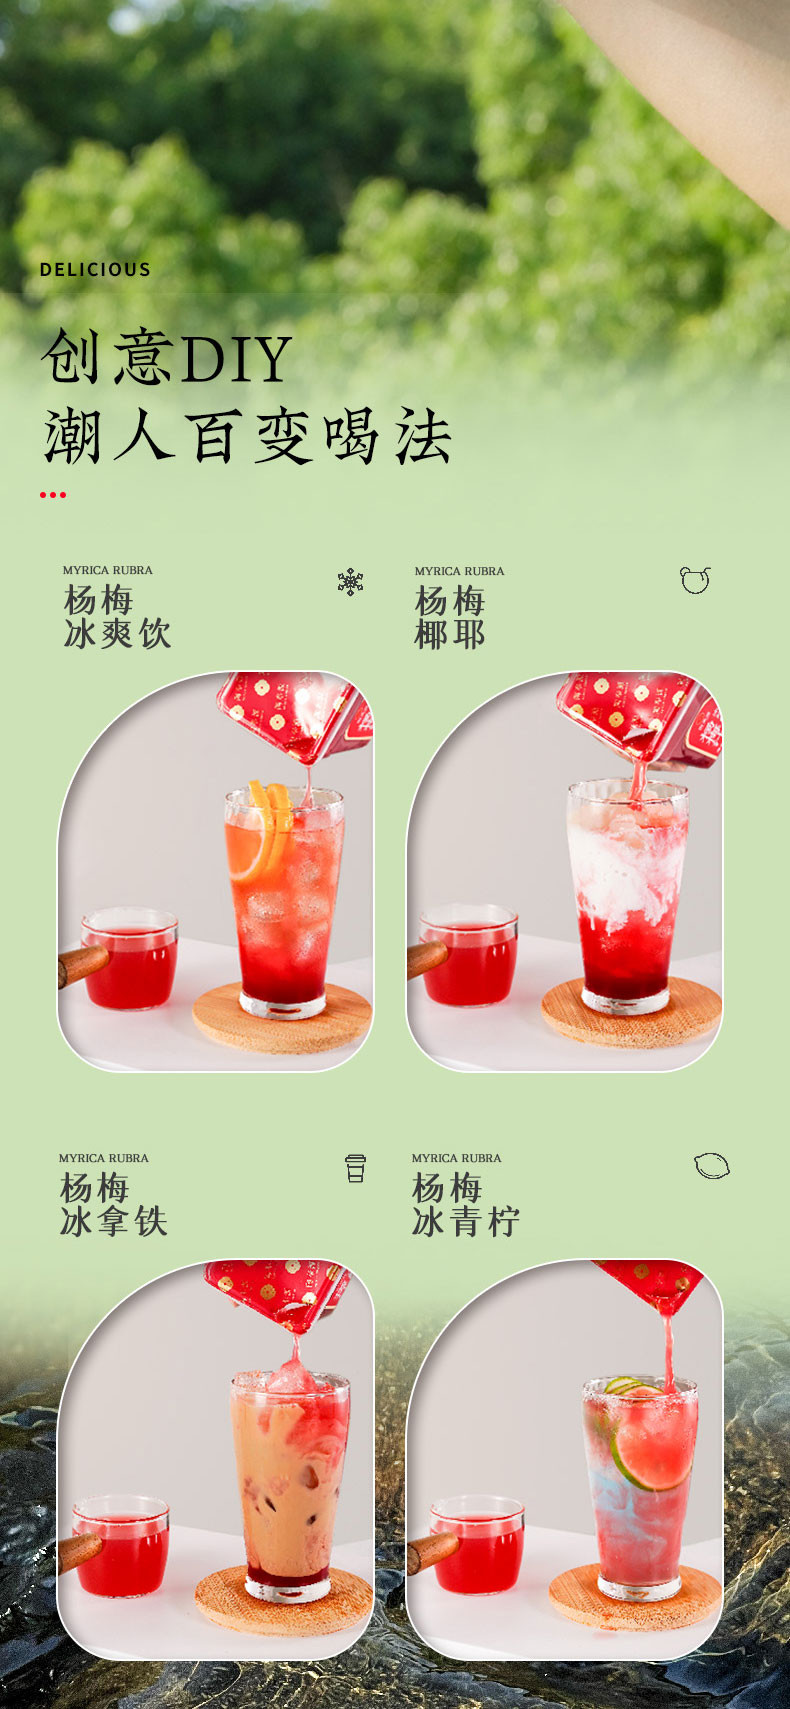 陶奉源 【绿色食品】 杨梅汁 配料干净 无添加 酸甜可口